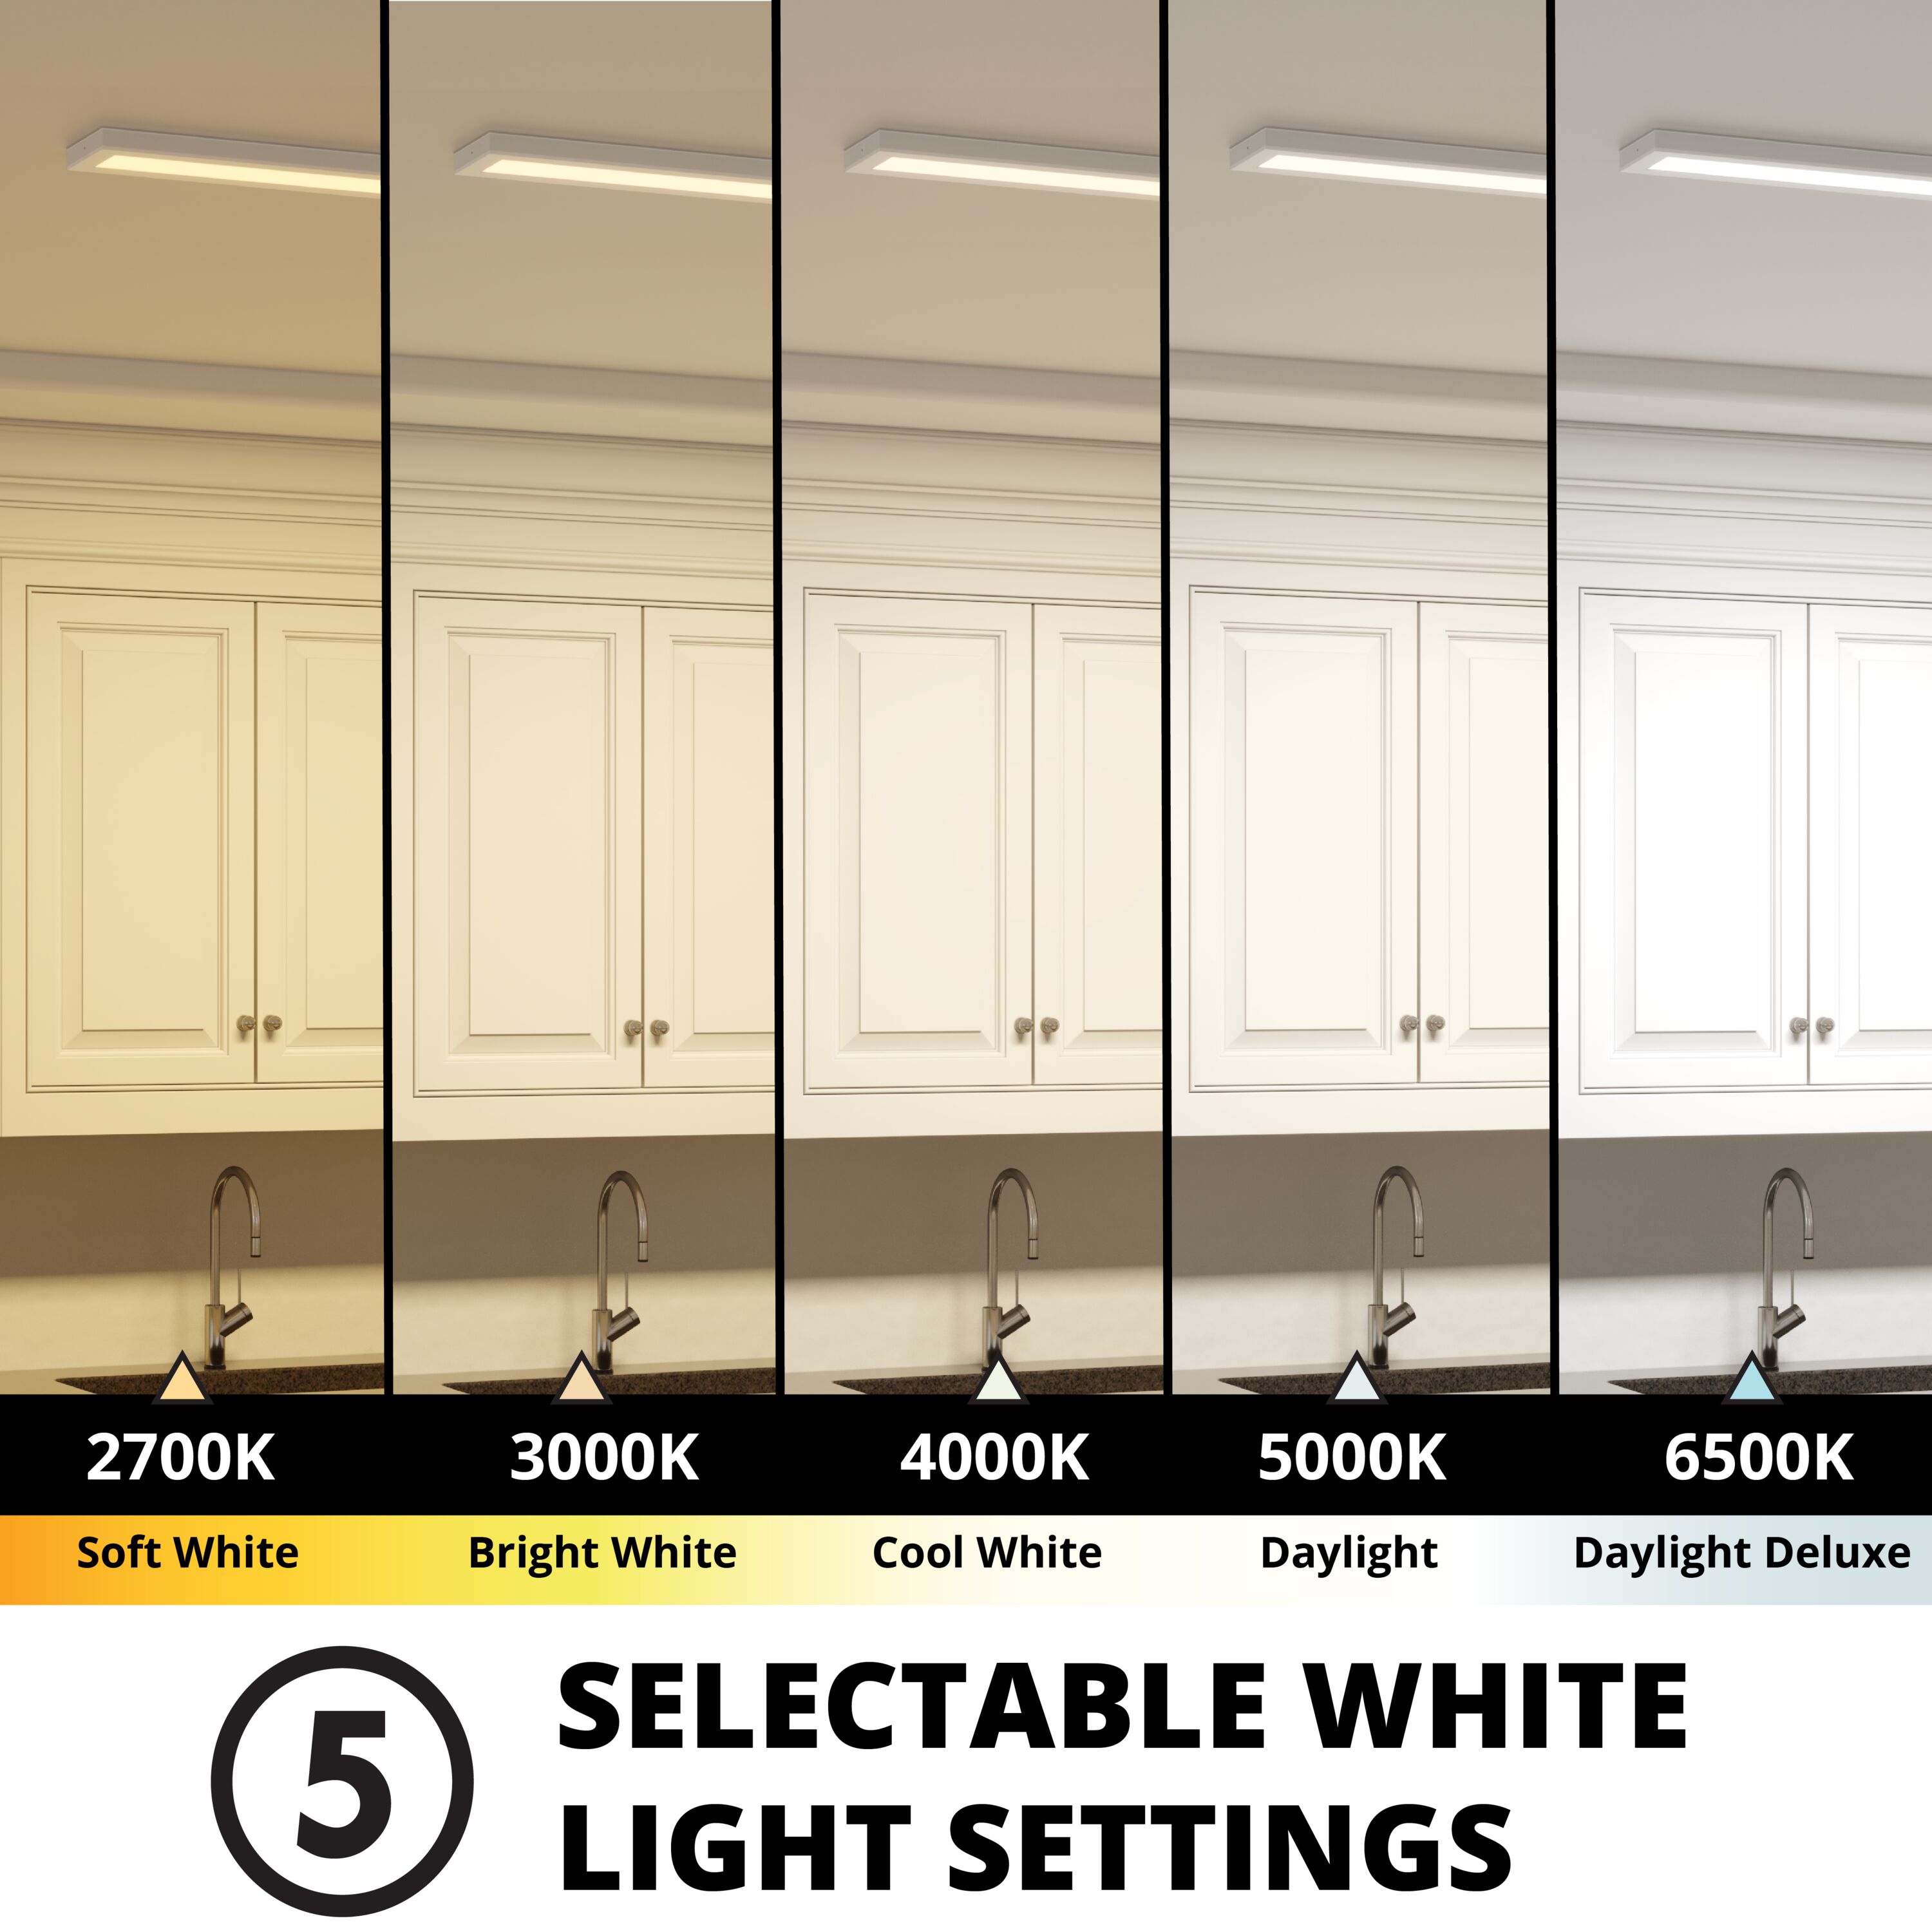 48-in White LED 5CCT Flat Panel Ceiling Light